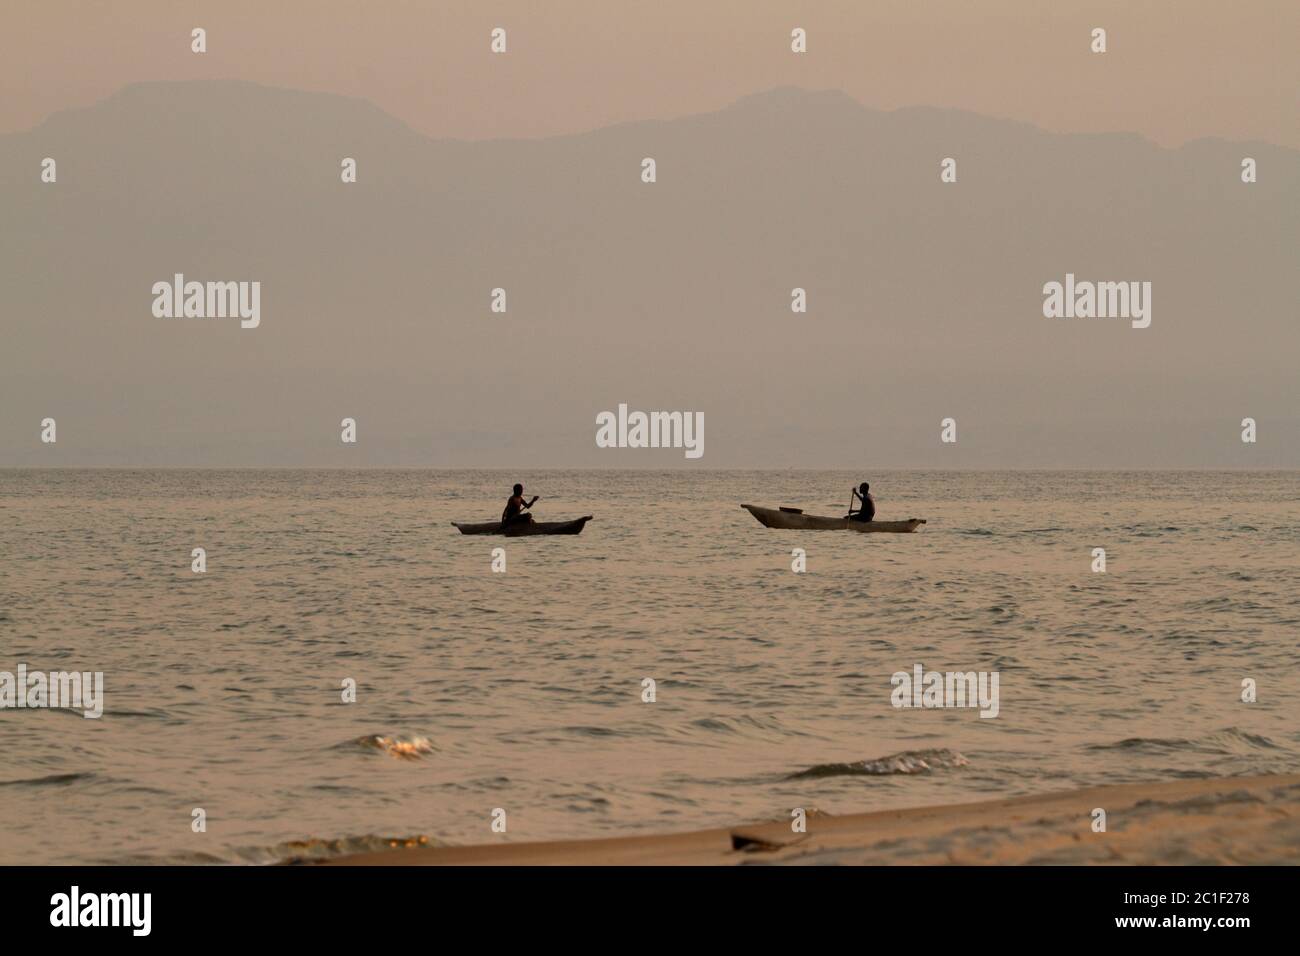 Fisherman at Lake Malawi in Africa Stock Photo